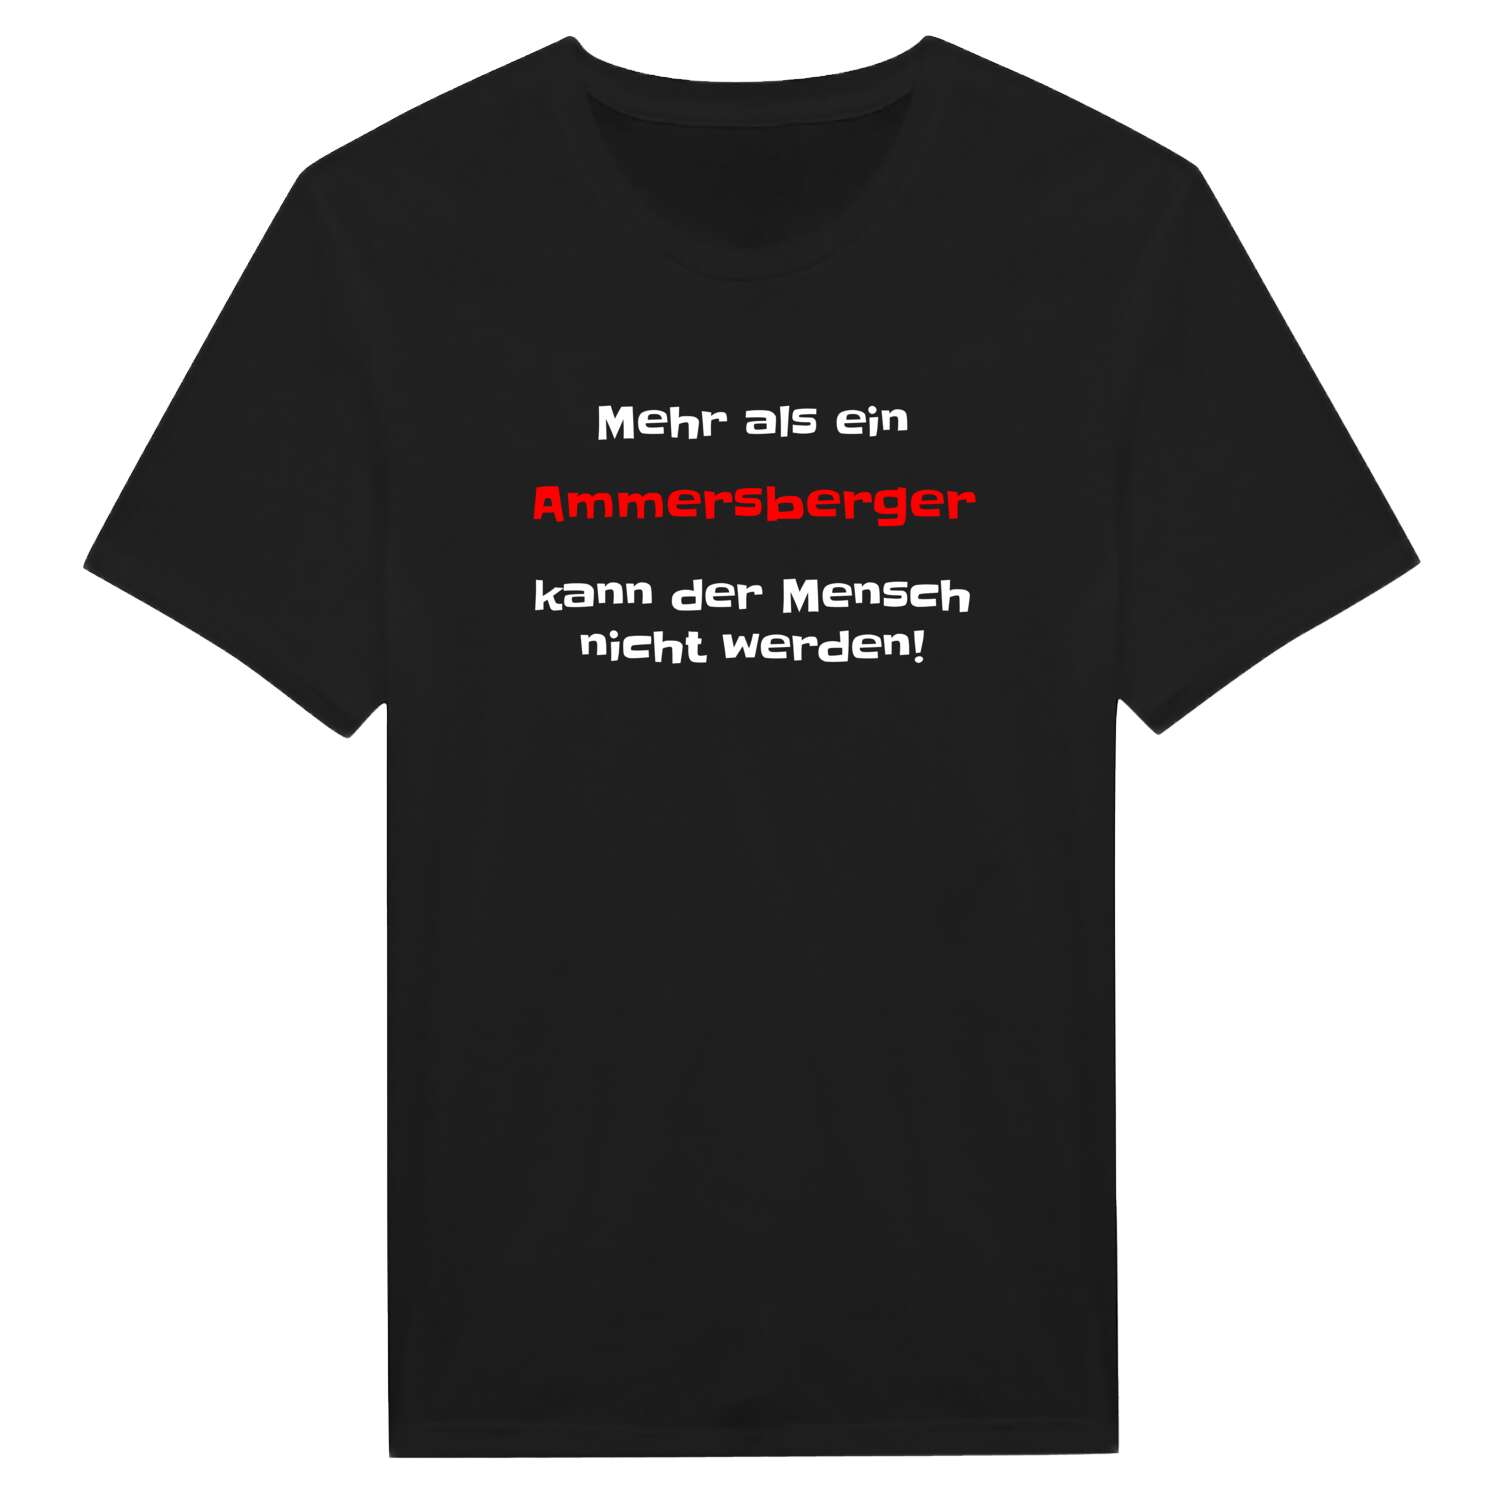 Ammersberg T-Shirt »Mehr als ein«